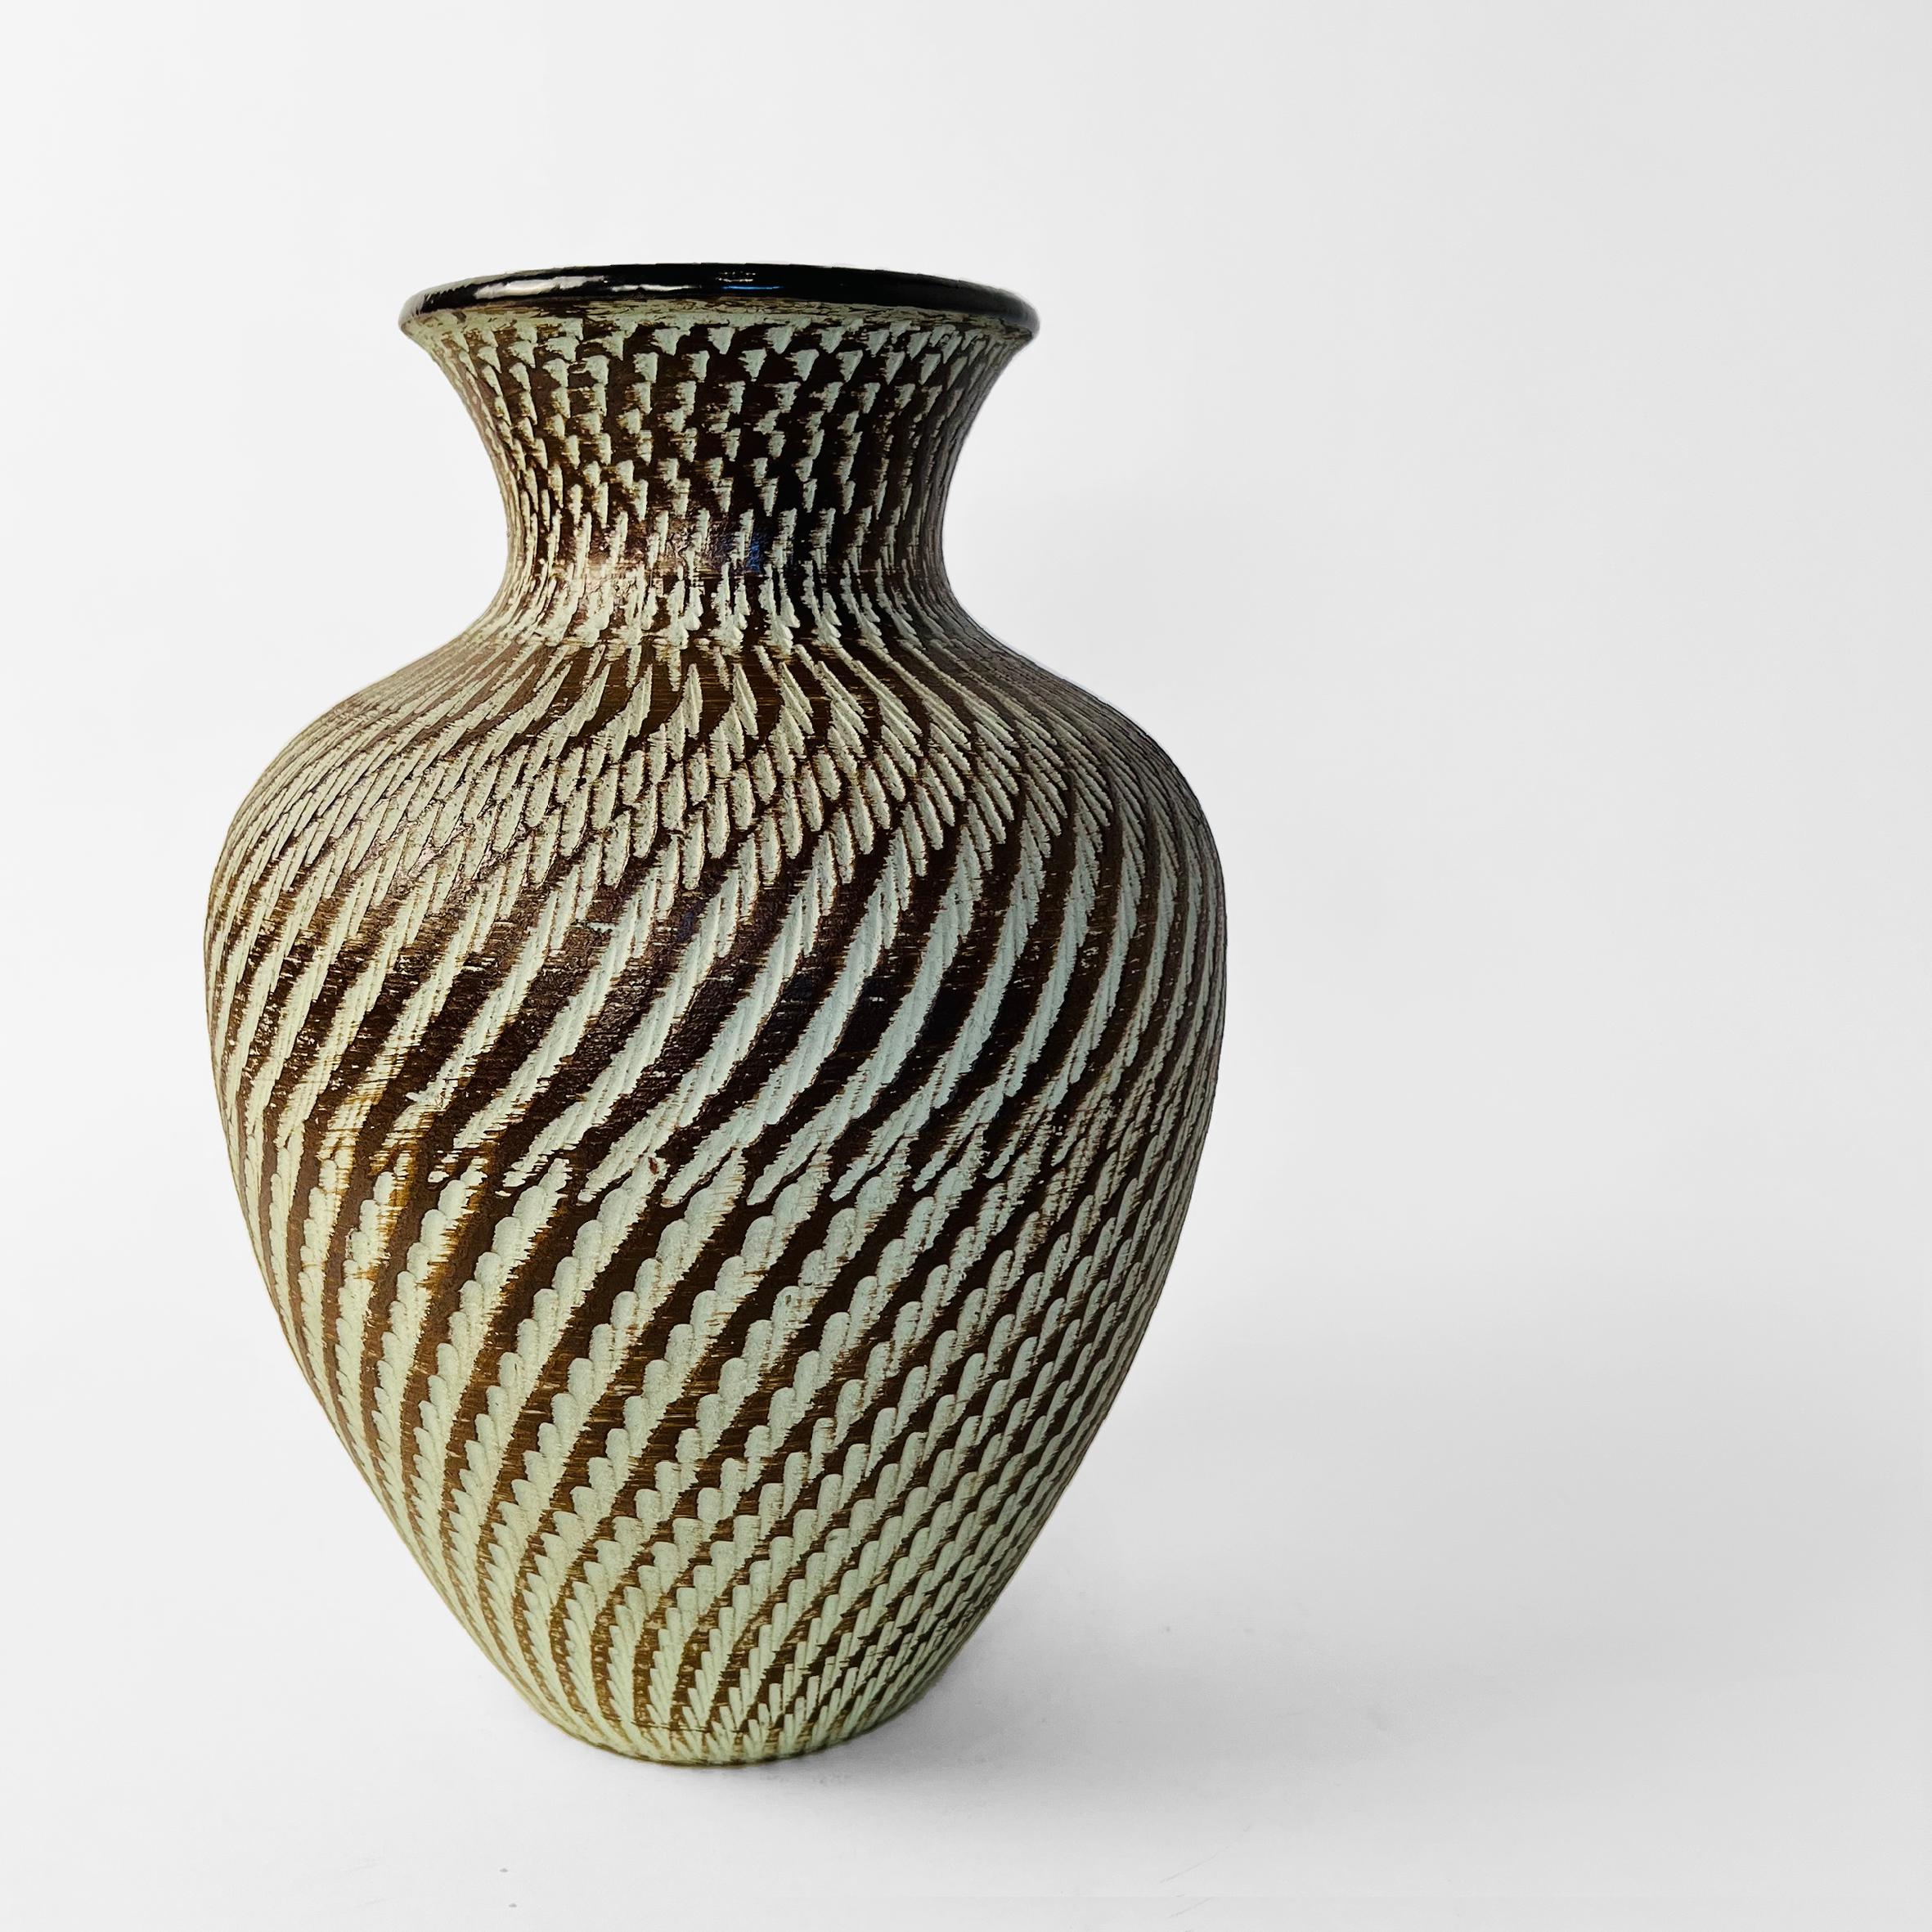 Carved Ceramic Pottery Vase by Dümler and Breiden. Germany, 1950s